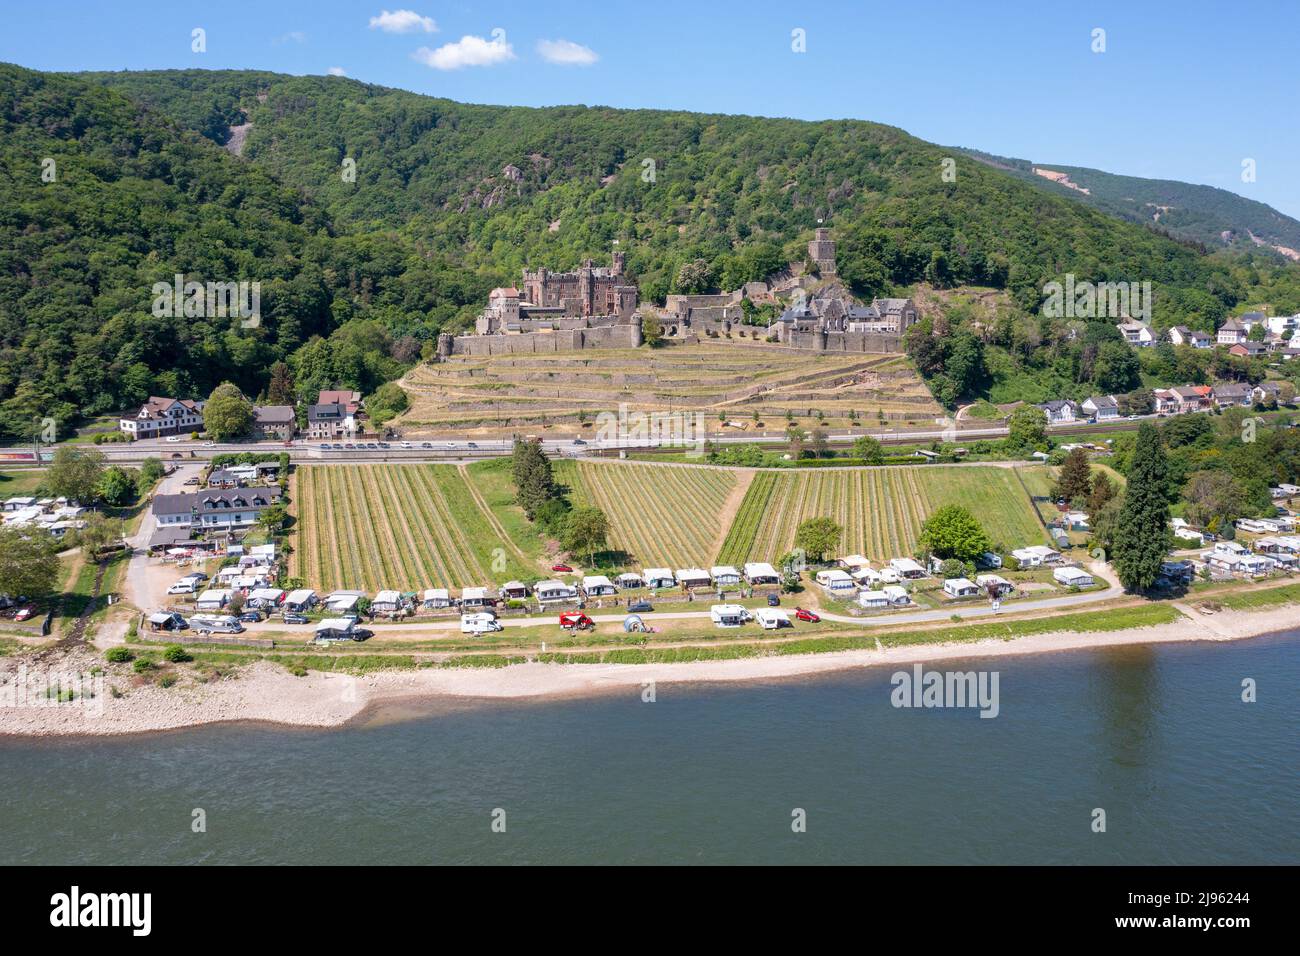 Burg Reichenstein,  Trechtingshausen, Rhein Valley, Germany Stock Photo